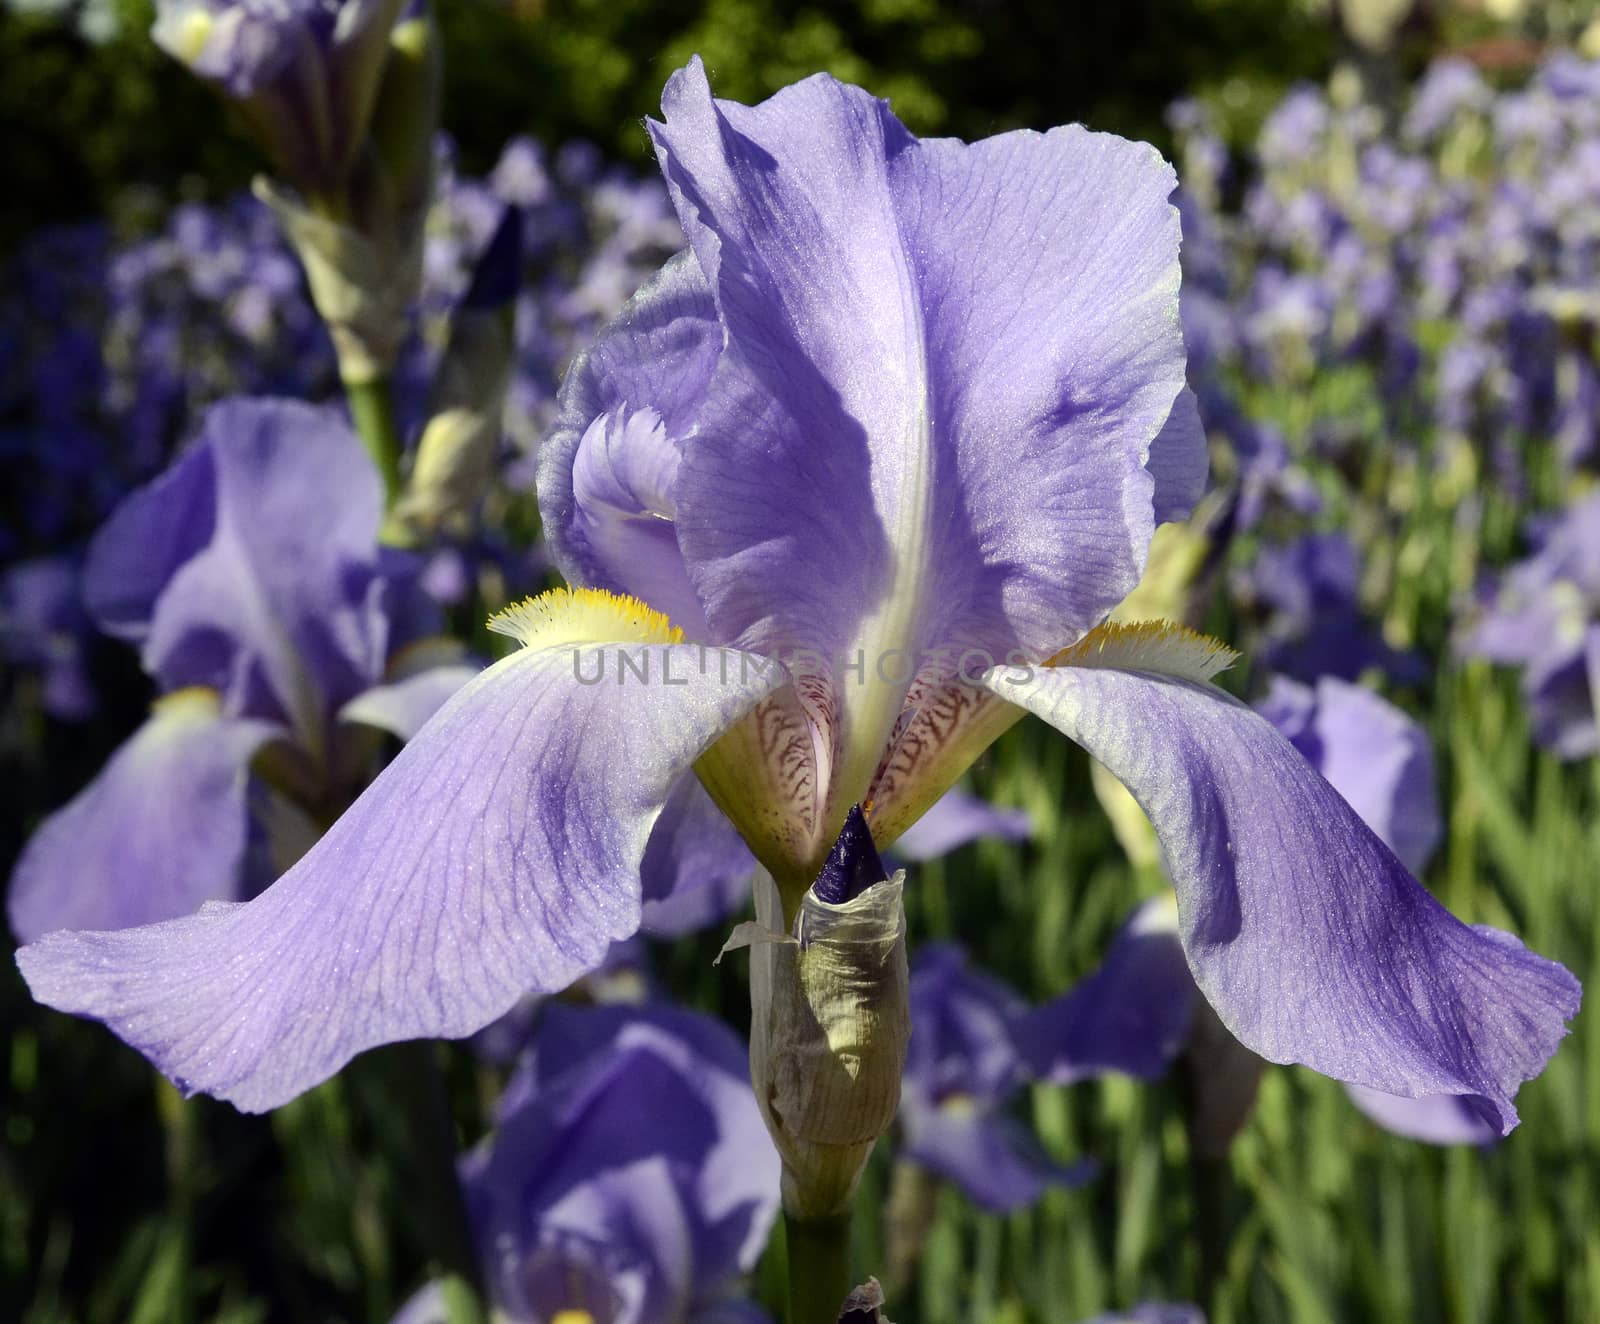 Violet iris flower on green garden background